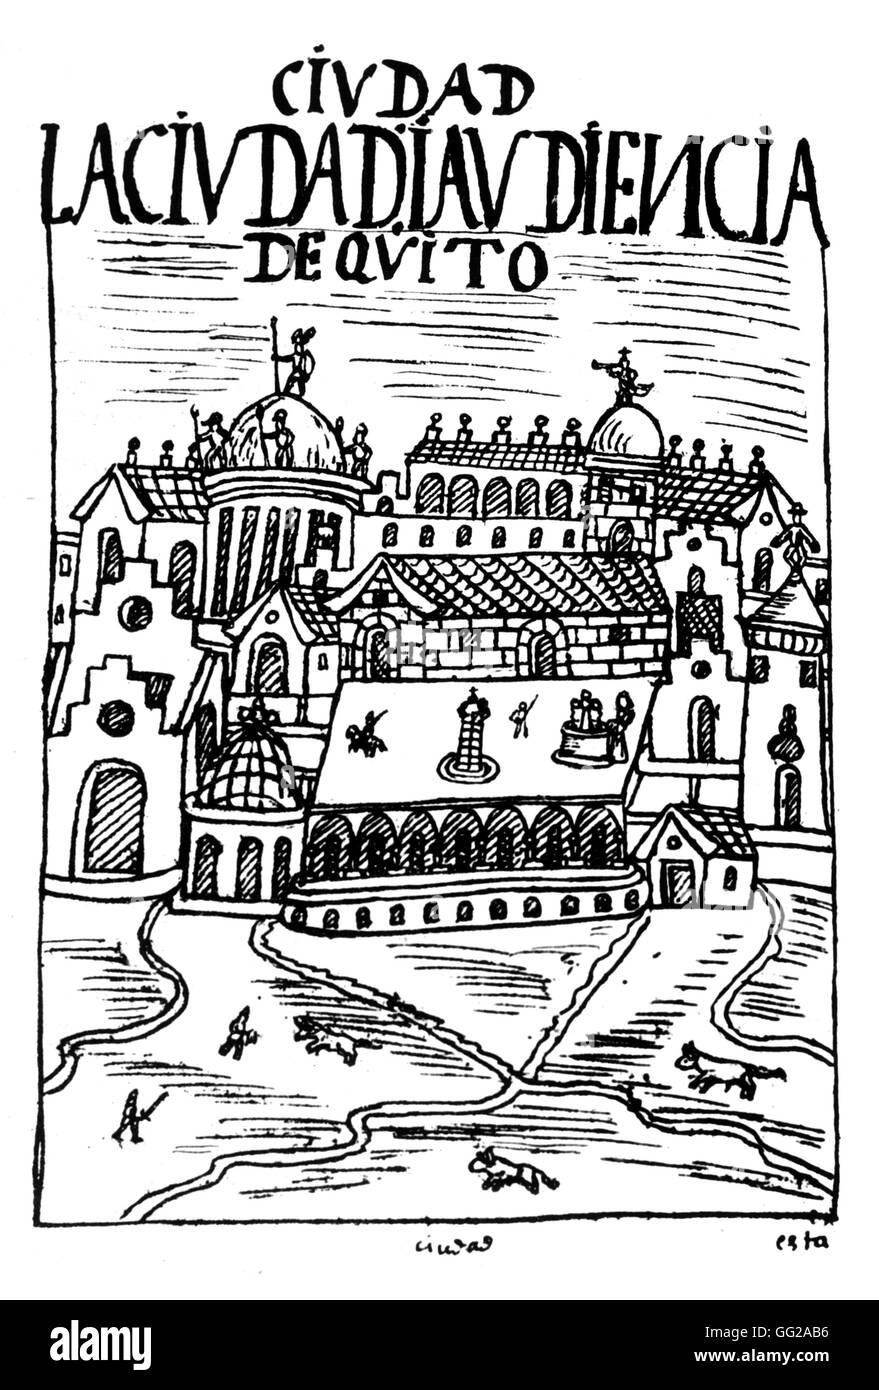 Chroniques de Huaman par Poma de Ayala : Vue de la ville de Quito. Manuscrit péruvien. 16e siècle au Pérou Banque D'Images